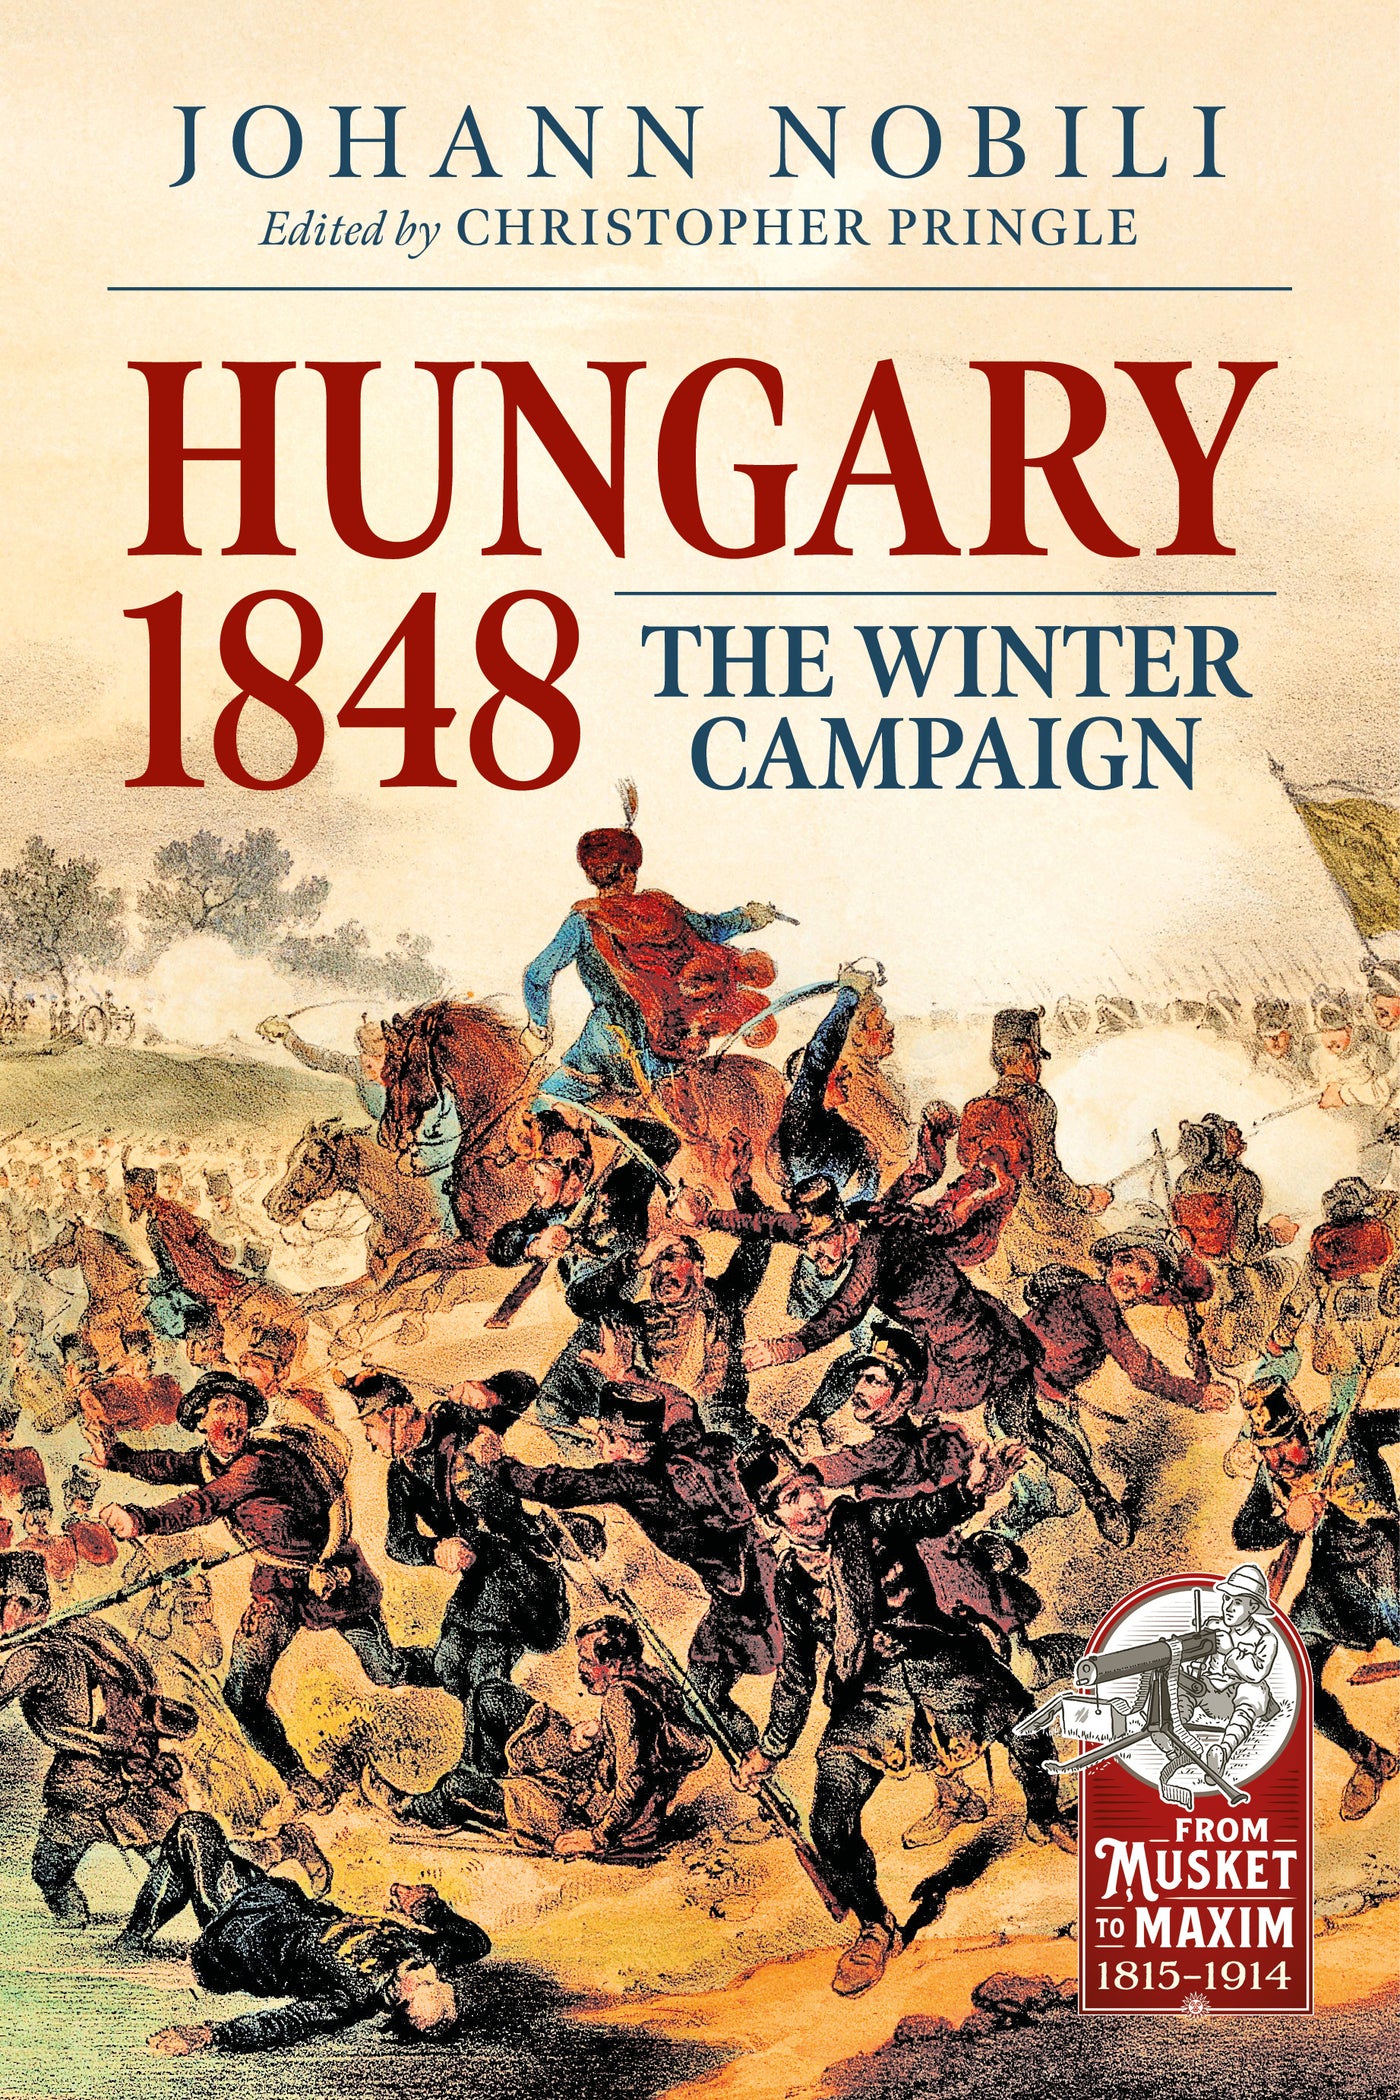 Hungary 1848